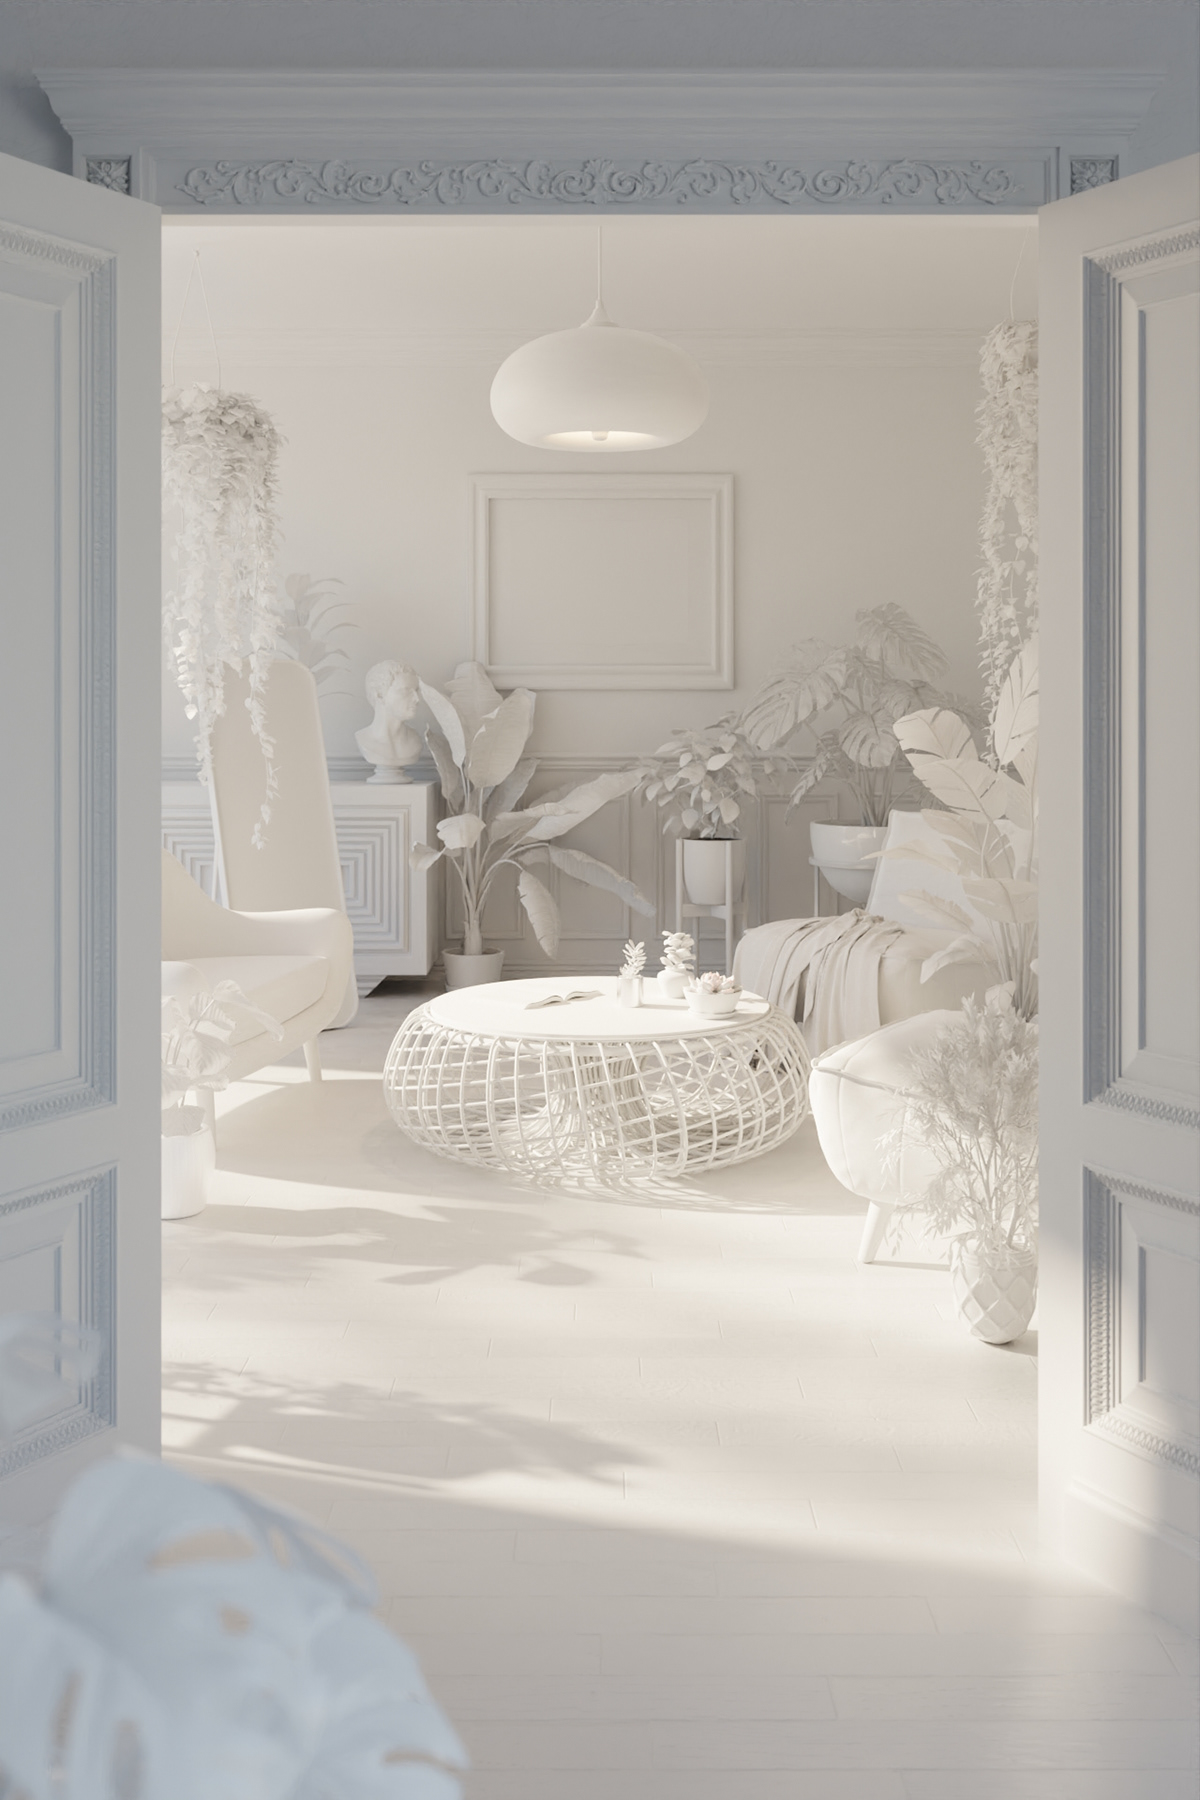 3D architecture archviz blender CGI Interior interior design  Render visualization